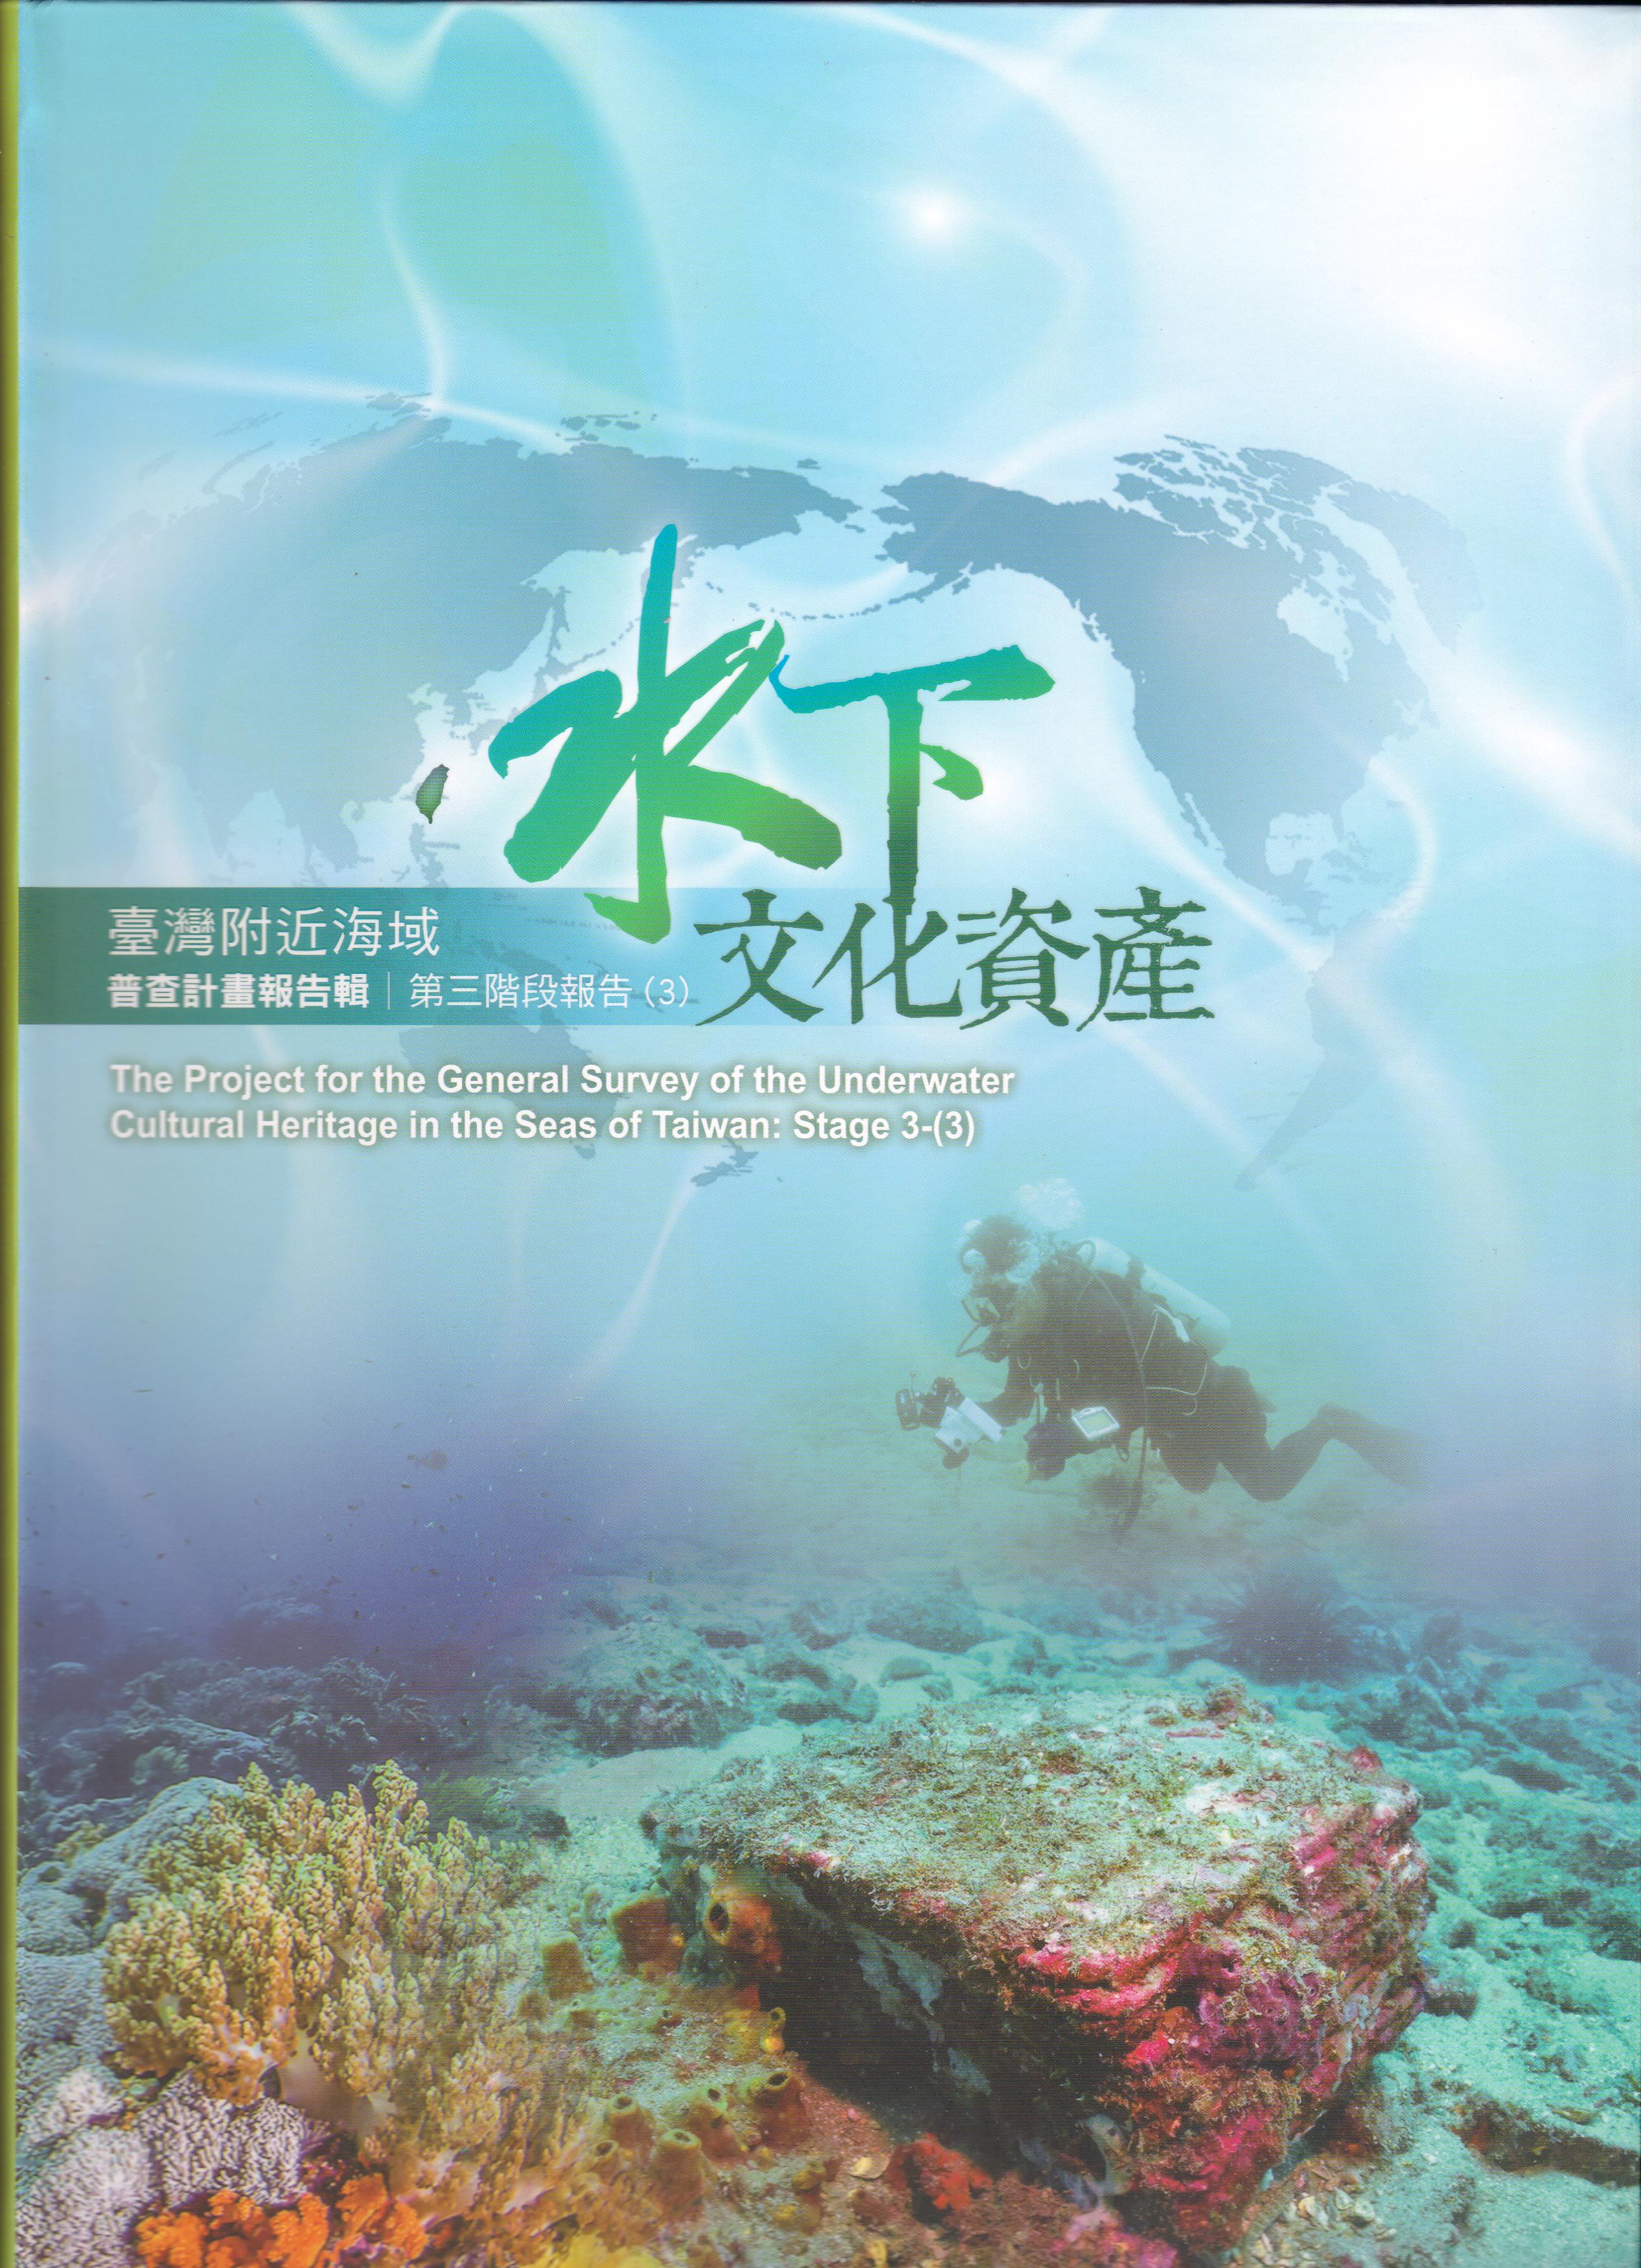 臺灣附近海域水下文化資產普查計畫報告輯第三階段報告(3)